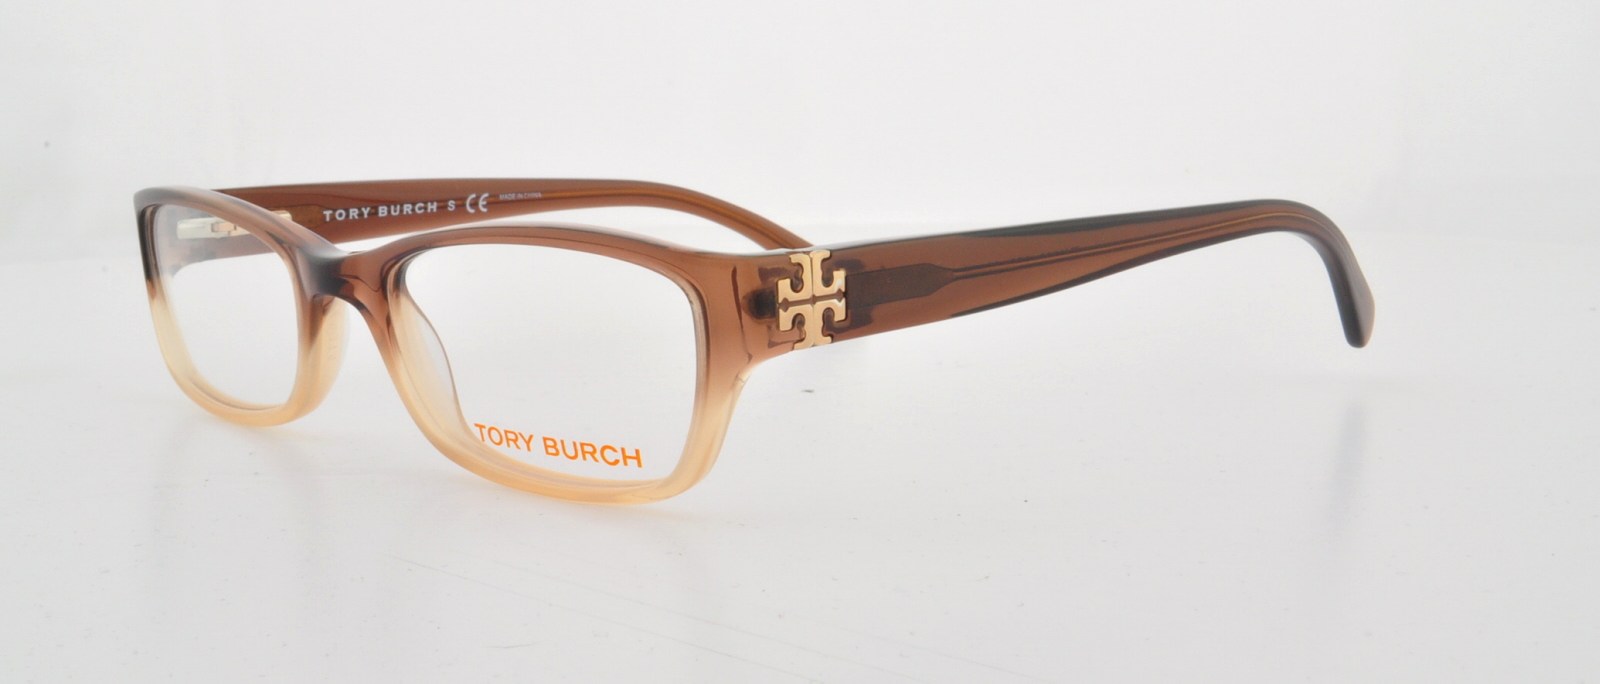 Designer Frames Outlet. Tory Burch Eyeglasses TY2003